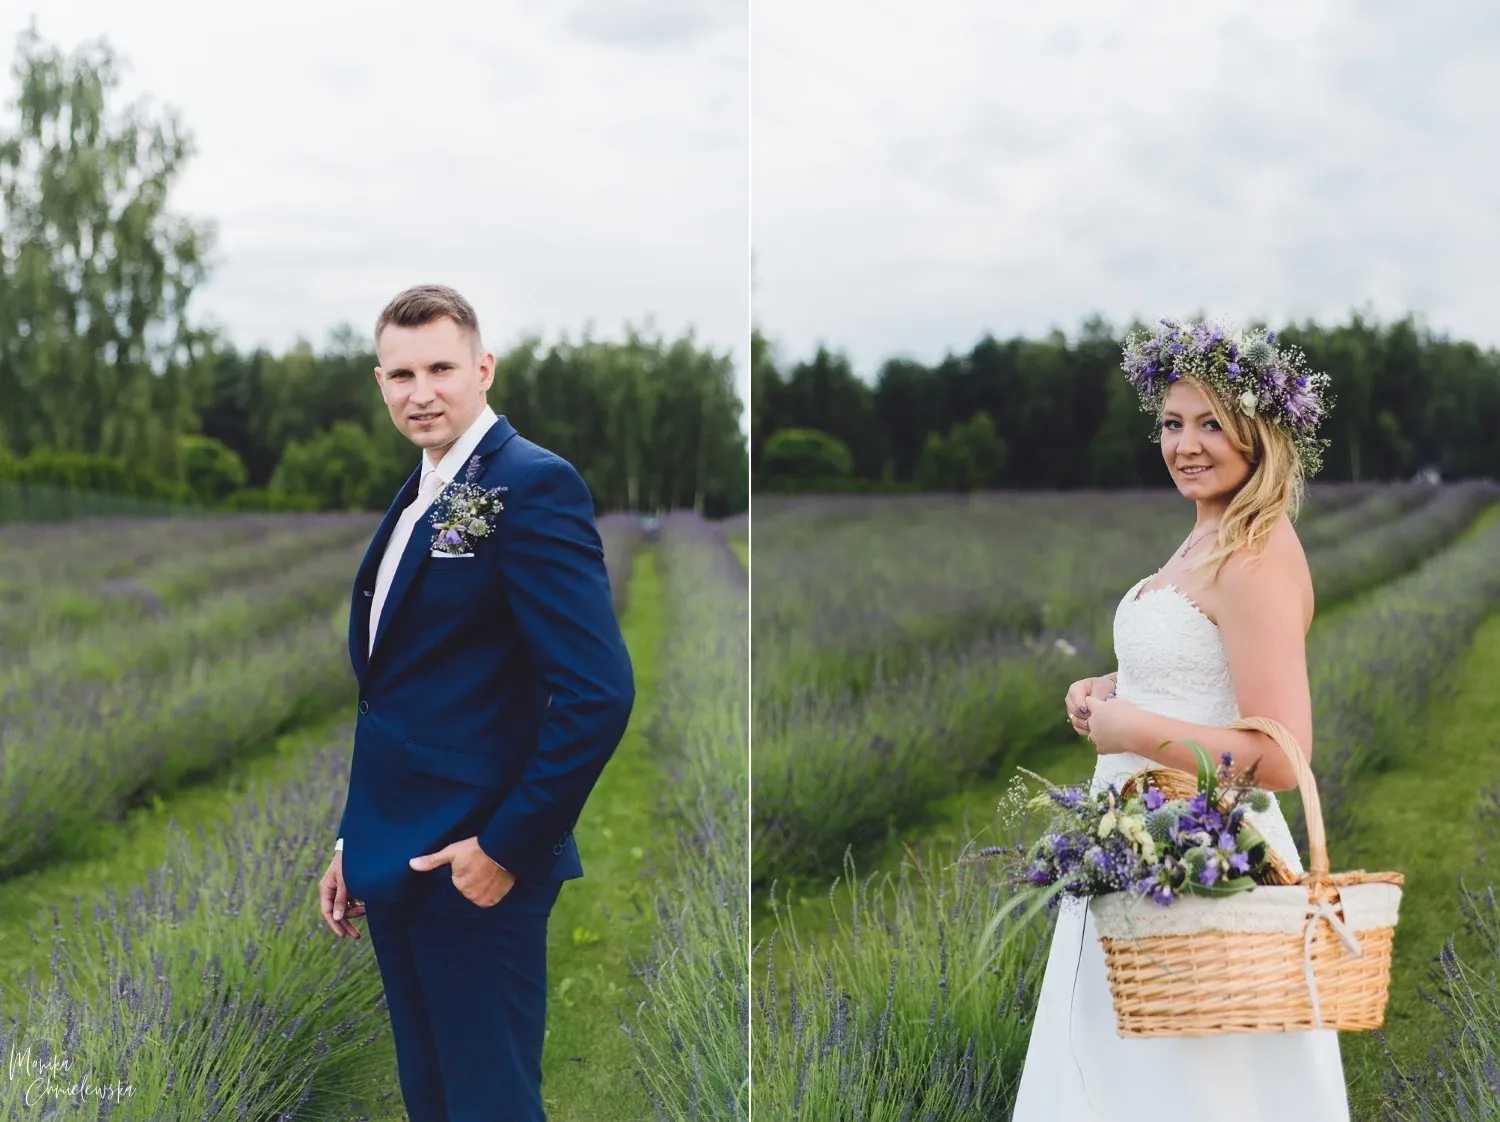 paulinamarcin_aftersession_10.webp - Paulina & Marcin- Monika Chmielewska - wedding, portaits, family photography - Munich